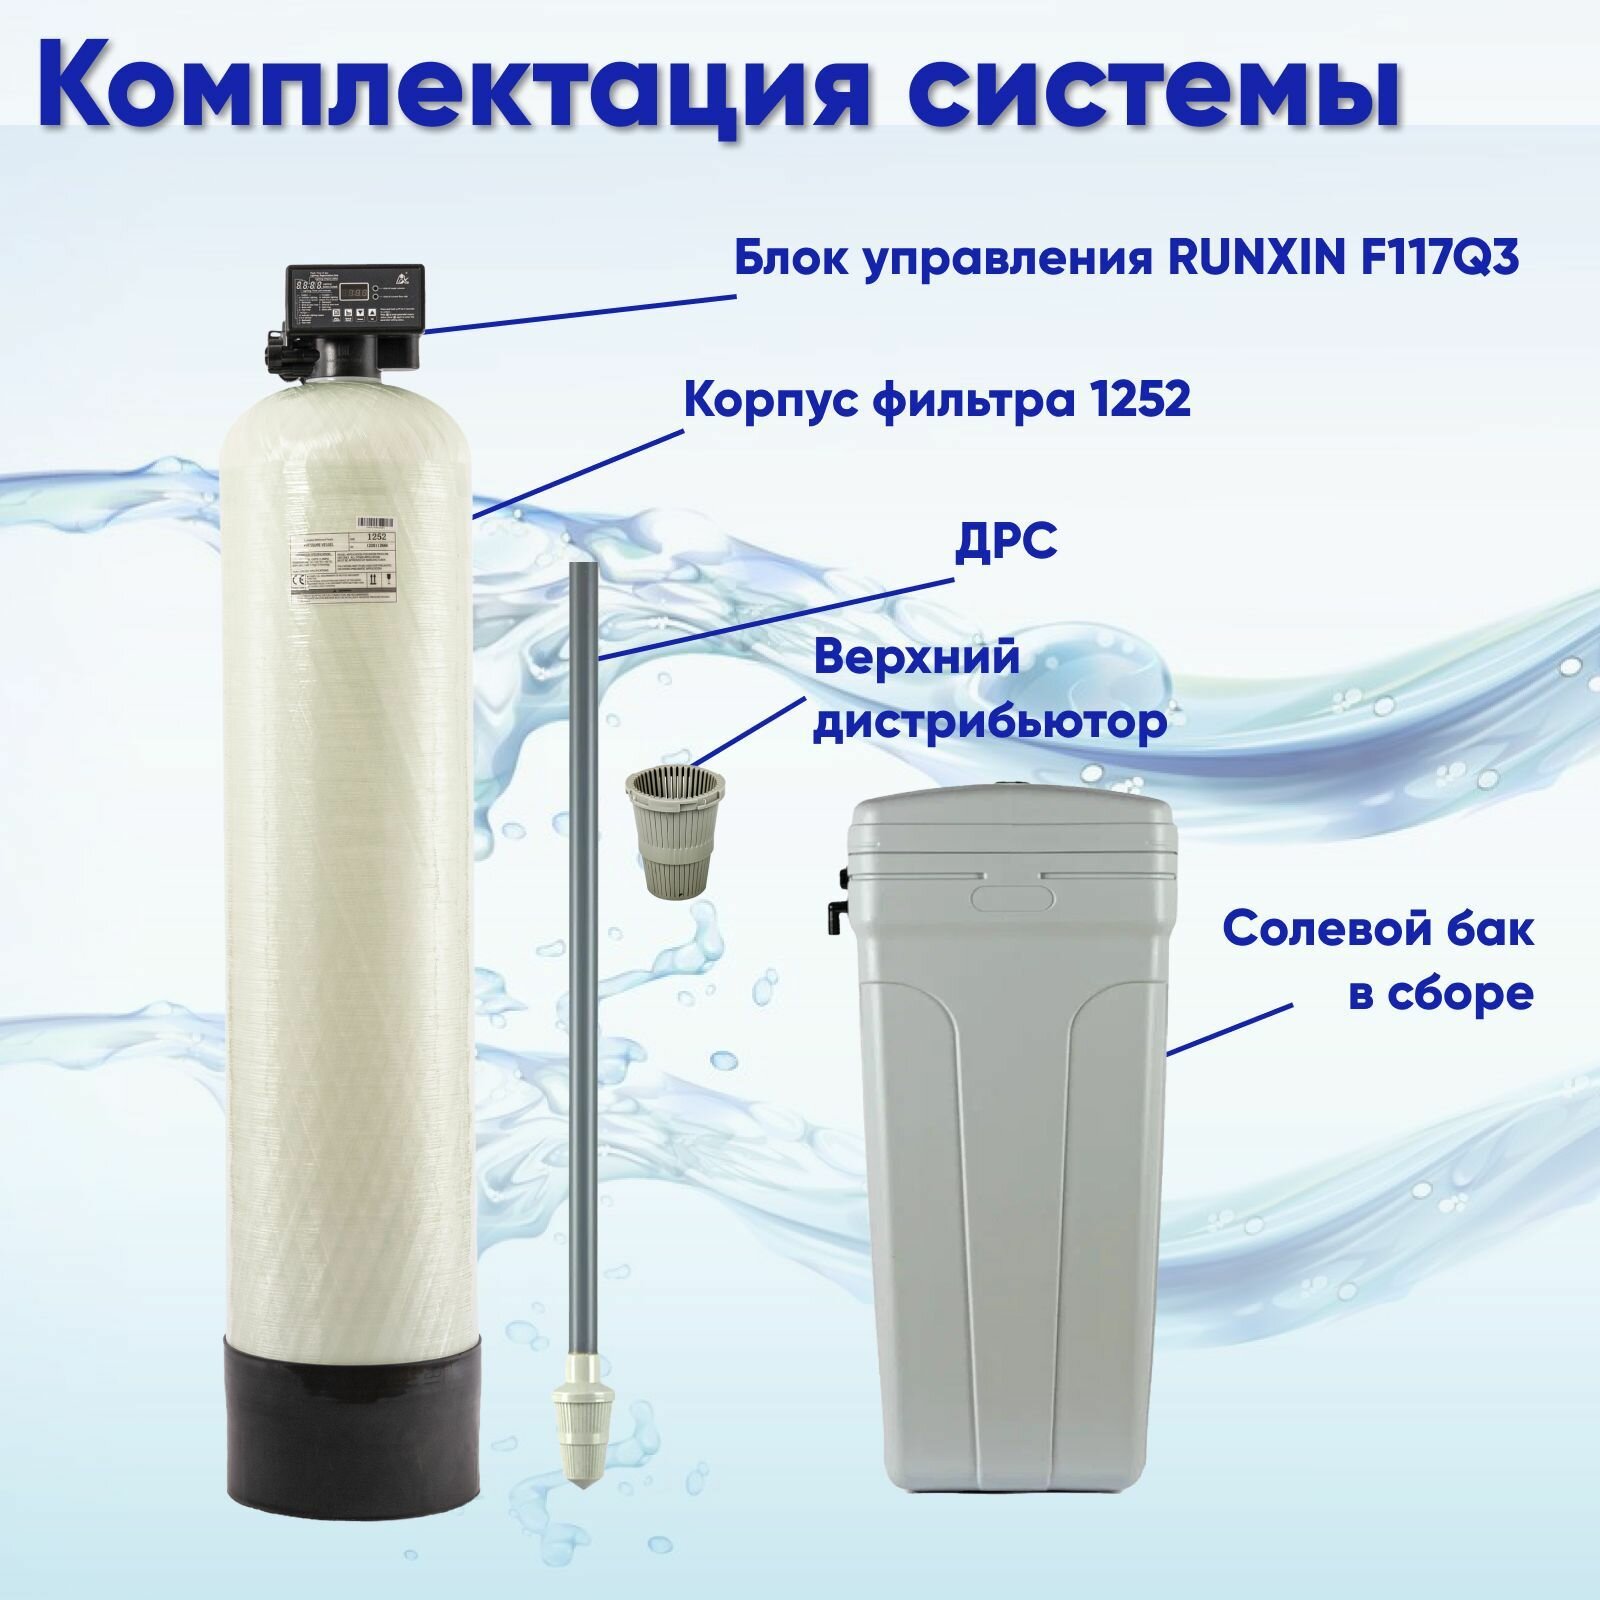 Система очистки воды DS 1252 Q. Комплект фильтр умягчения, обезжелезивания воды из водопровода, колодца, скважины, для дома и дачи. Потребители до 4 человек